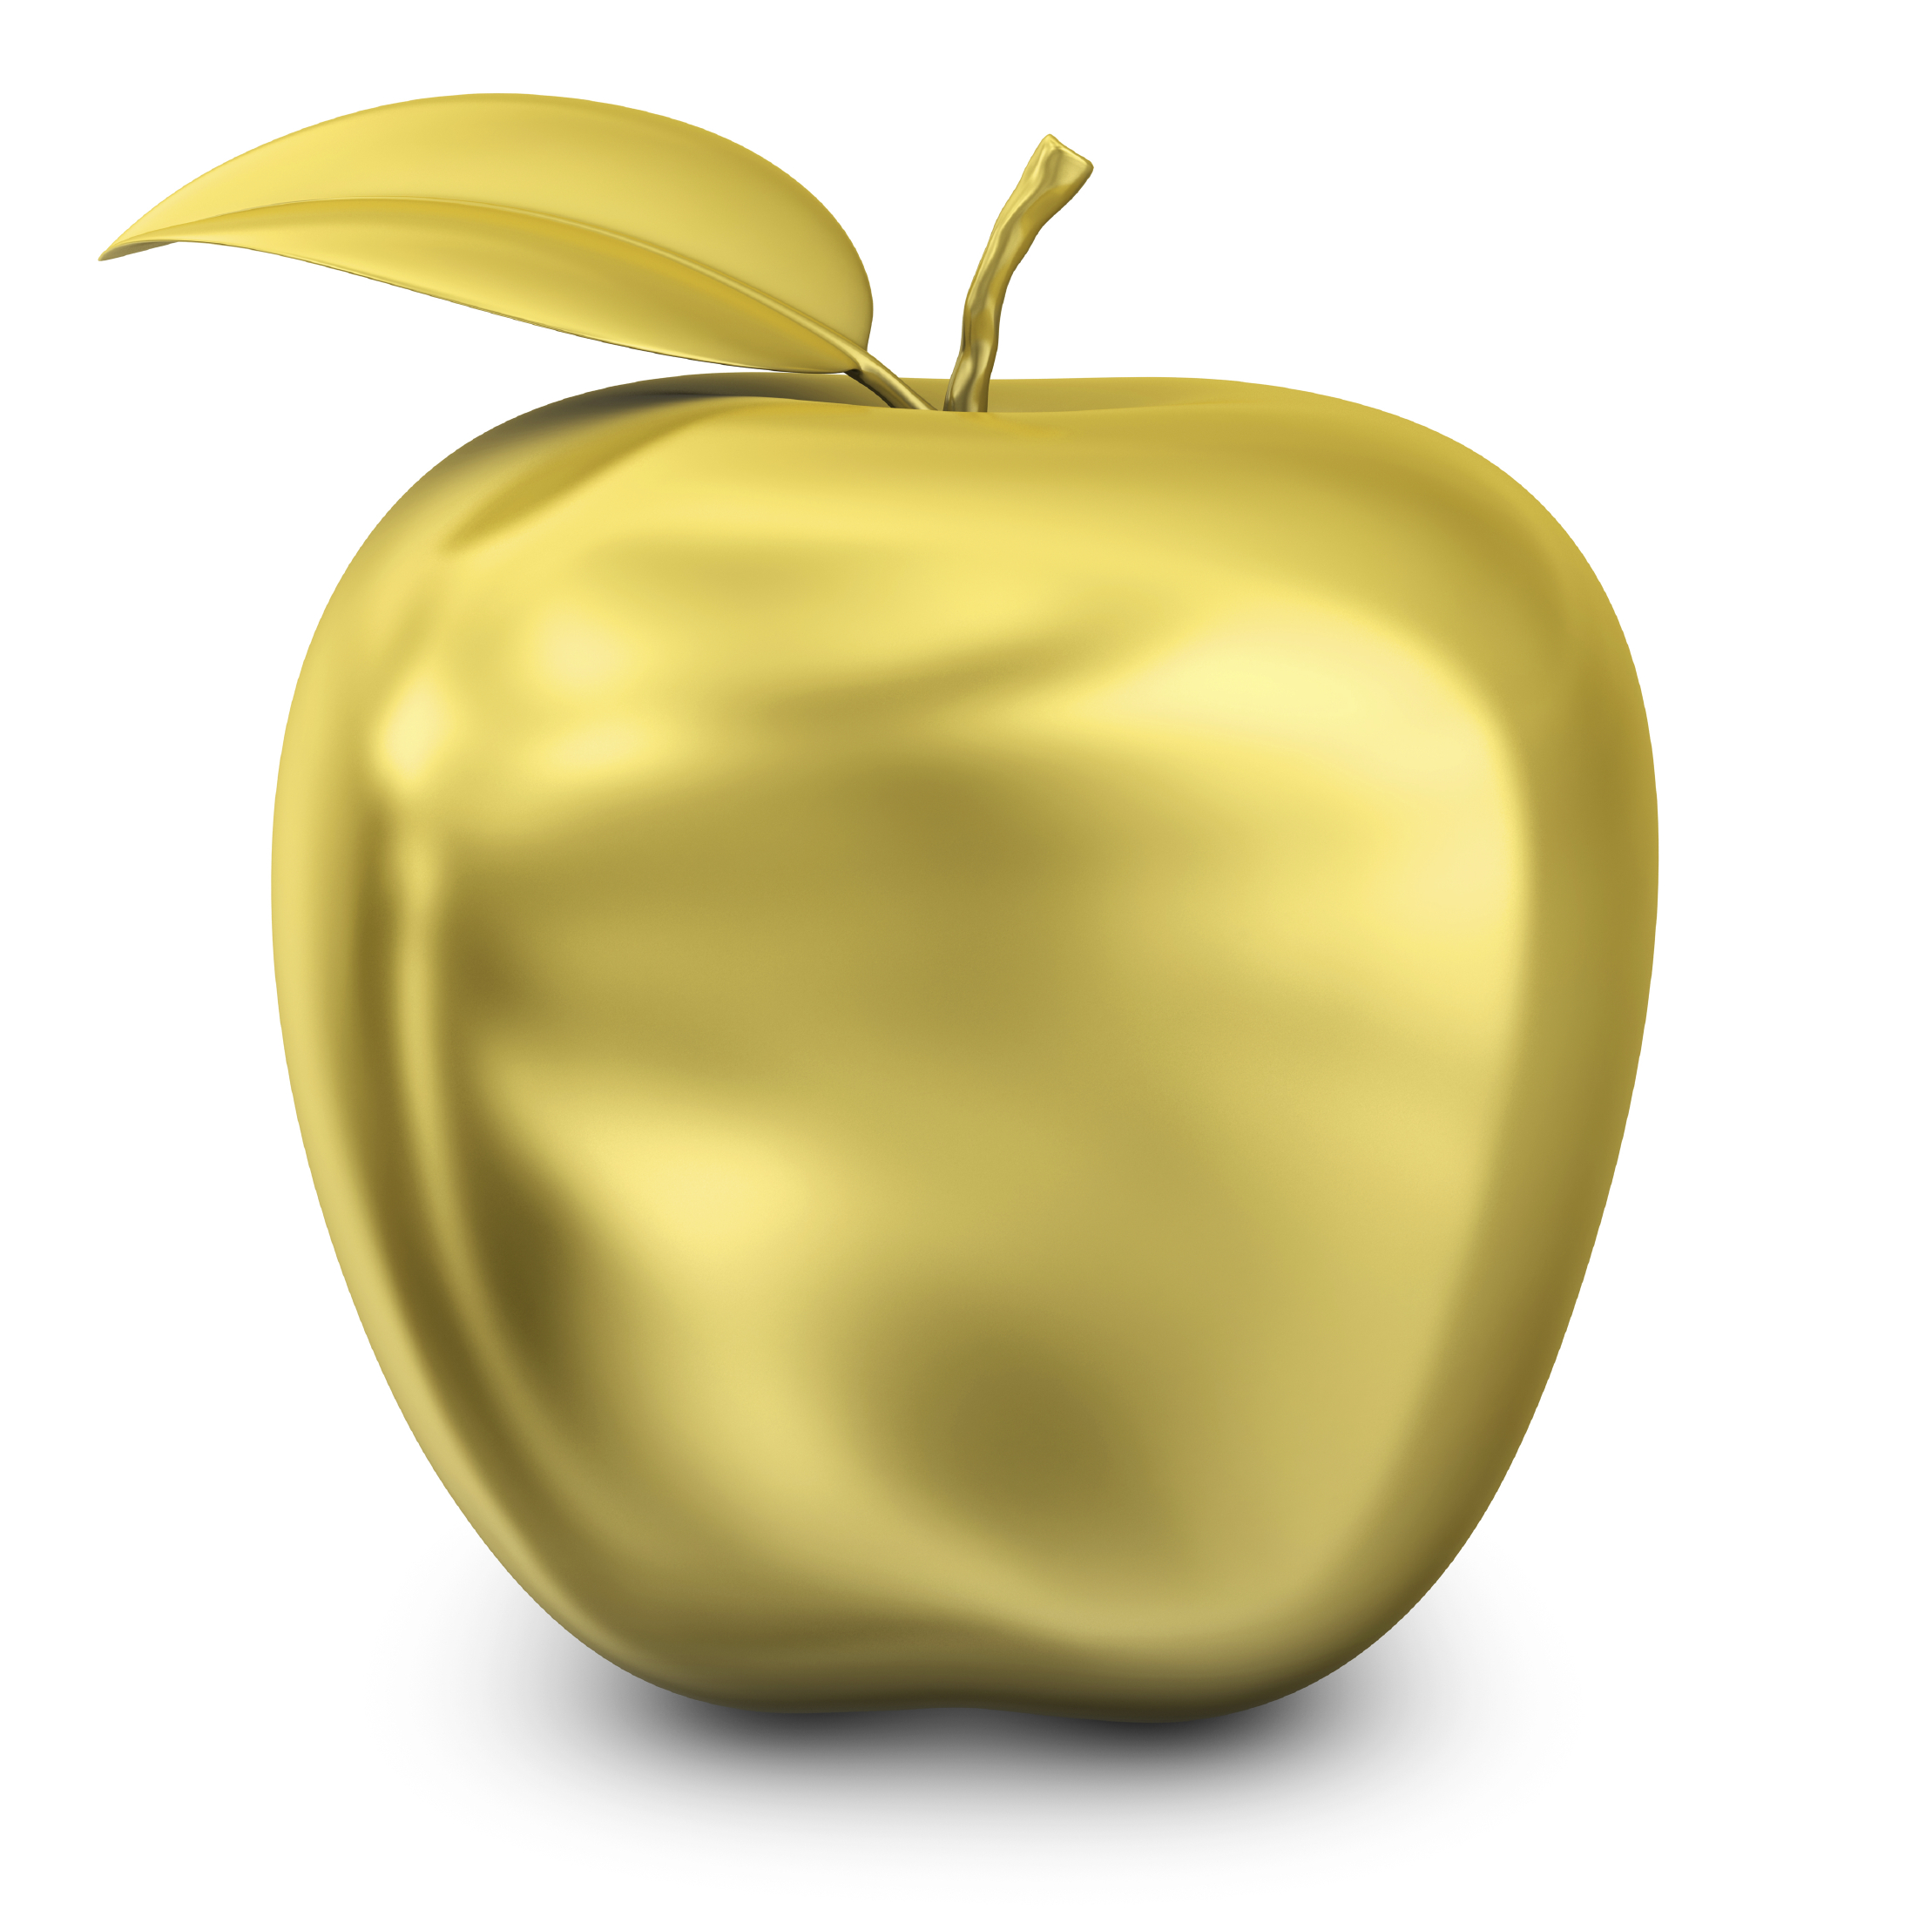 Мир золотое яблоко. Голд эпл эпл Голд. Голд Эппл золотое яблоко. Золотая яблоня. Золотое яблоко на прозрачном фоне.